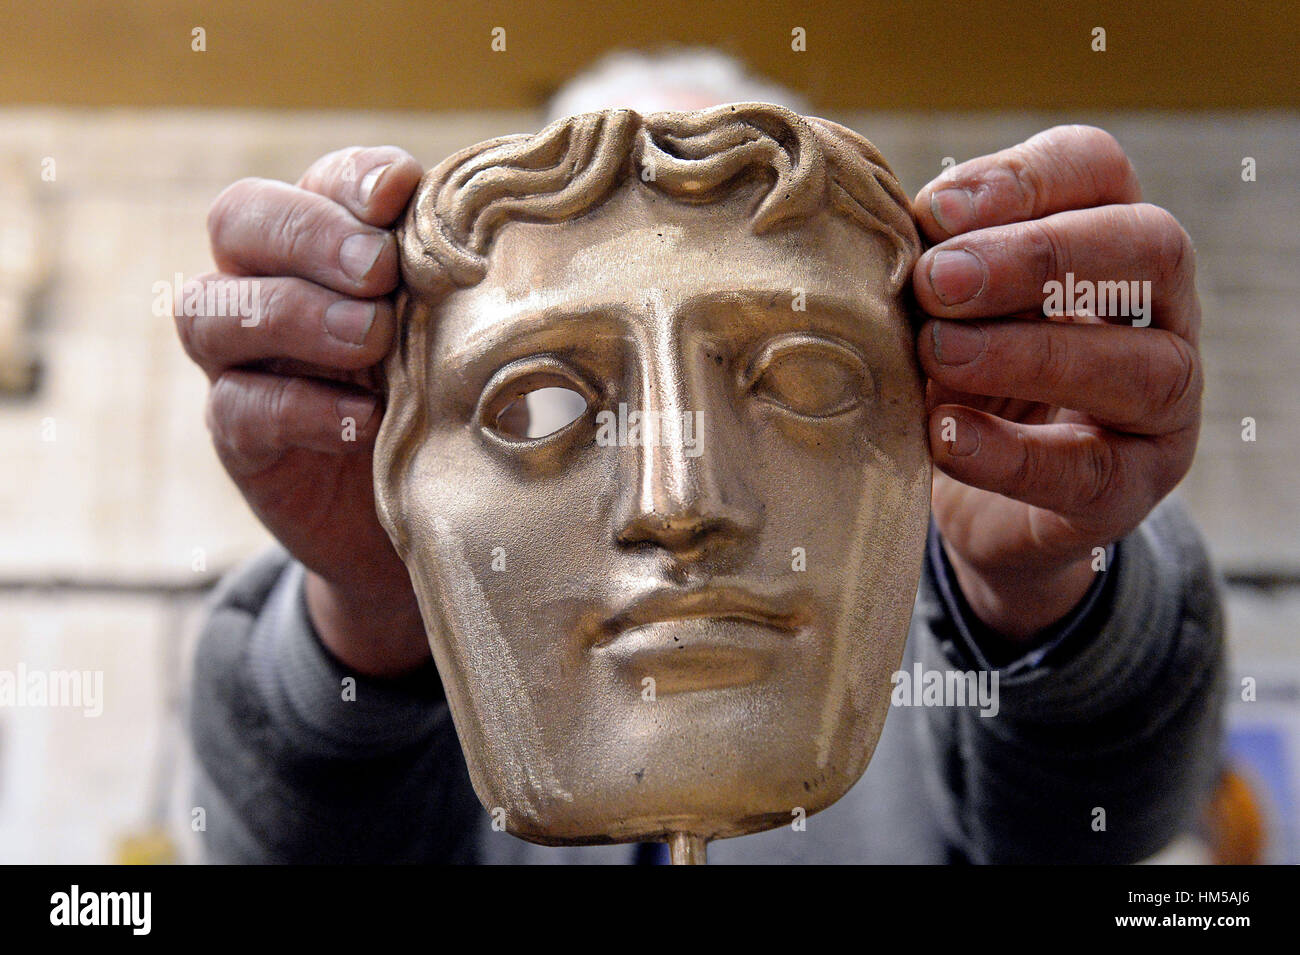 Una maschera di BAFTA è fatta al nuovo Pro fonderie in West Drayton, Middlesex, precedendo la cerimonia entro questo mese. Foto Stock